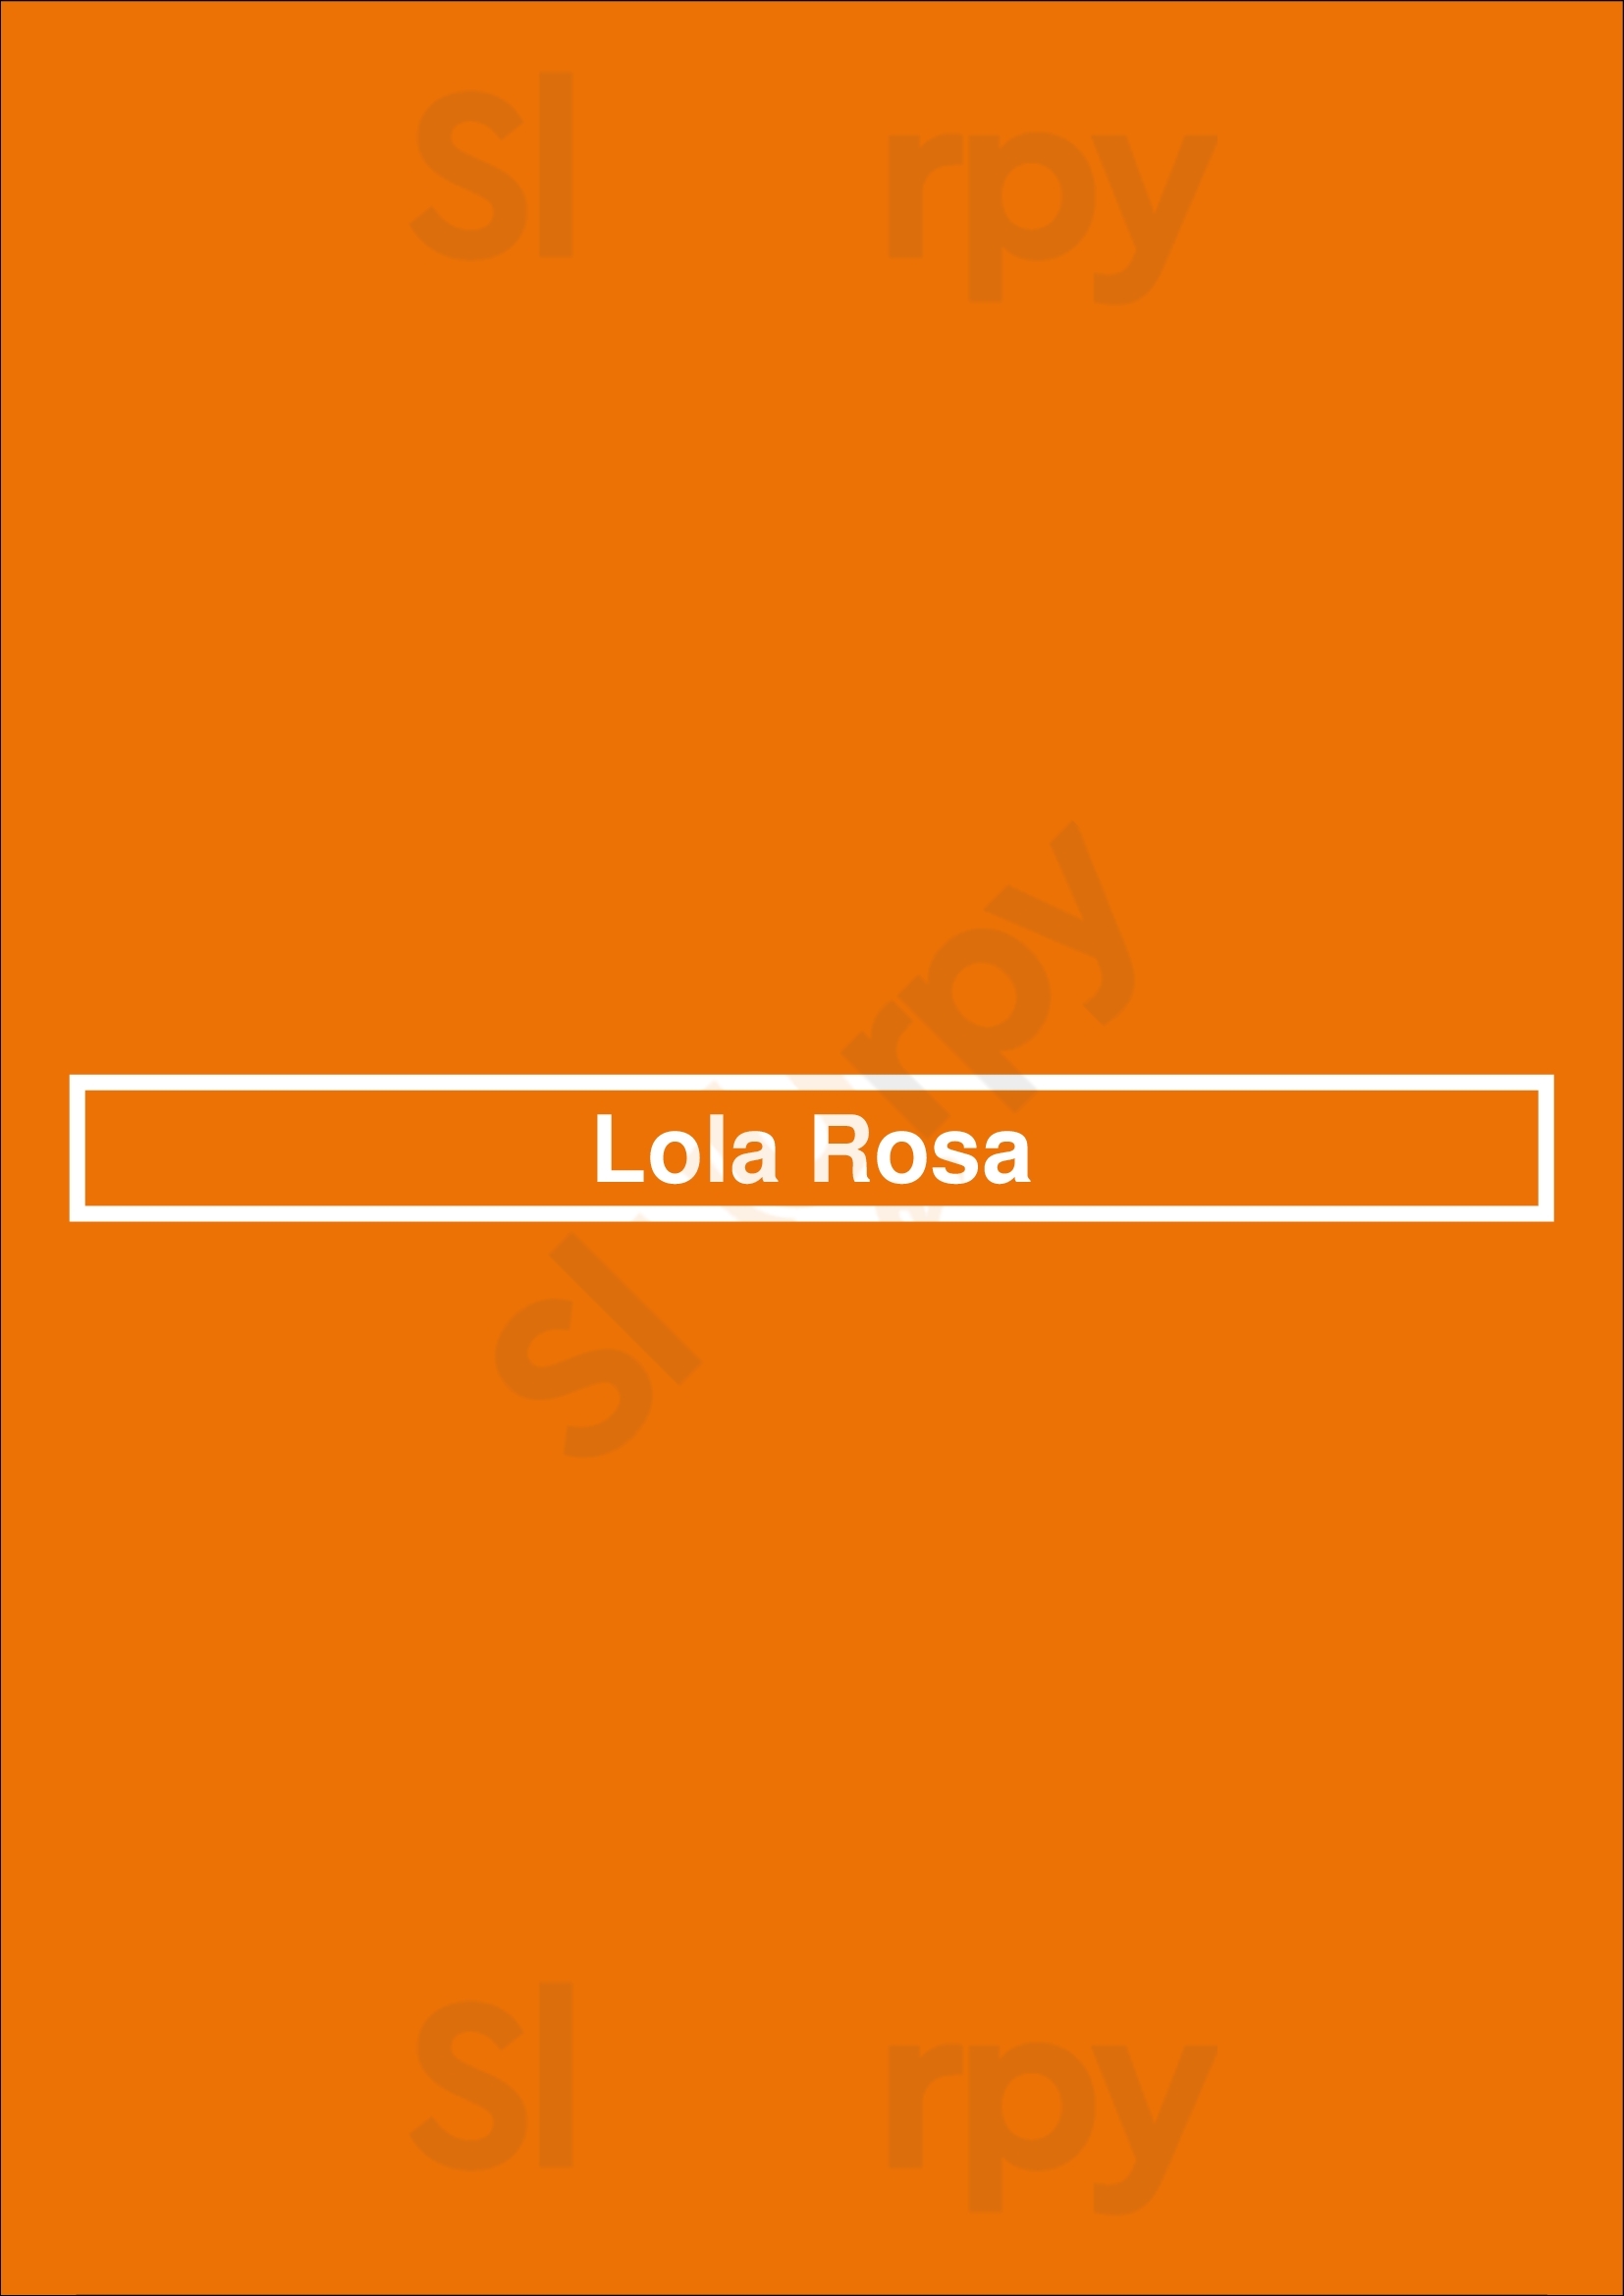 Lola Rosa Montreal Menu - 1